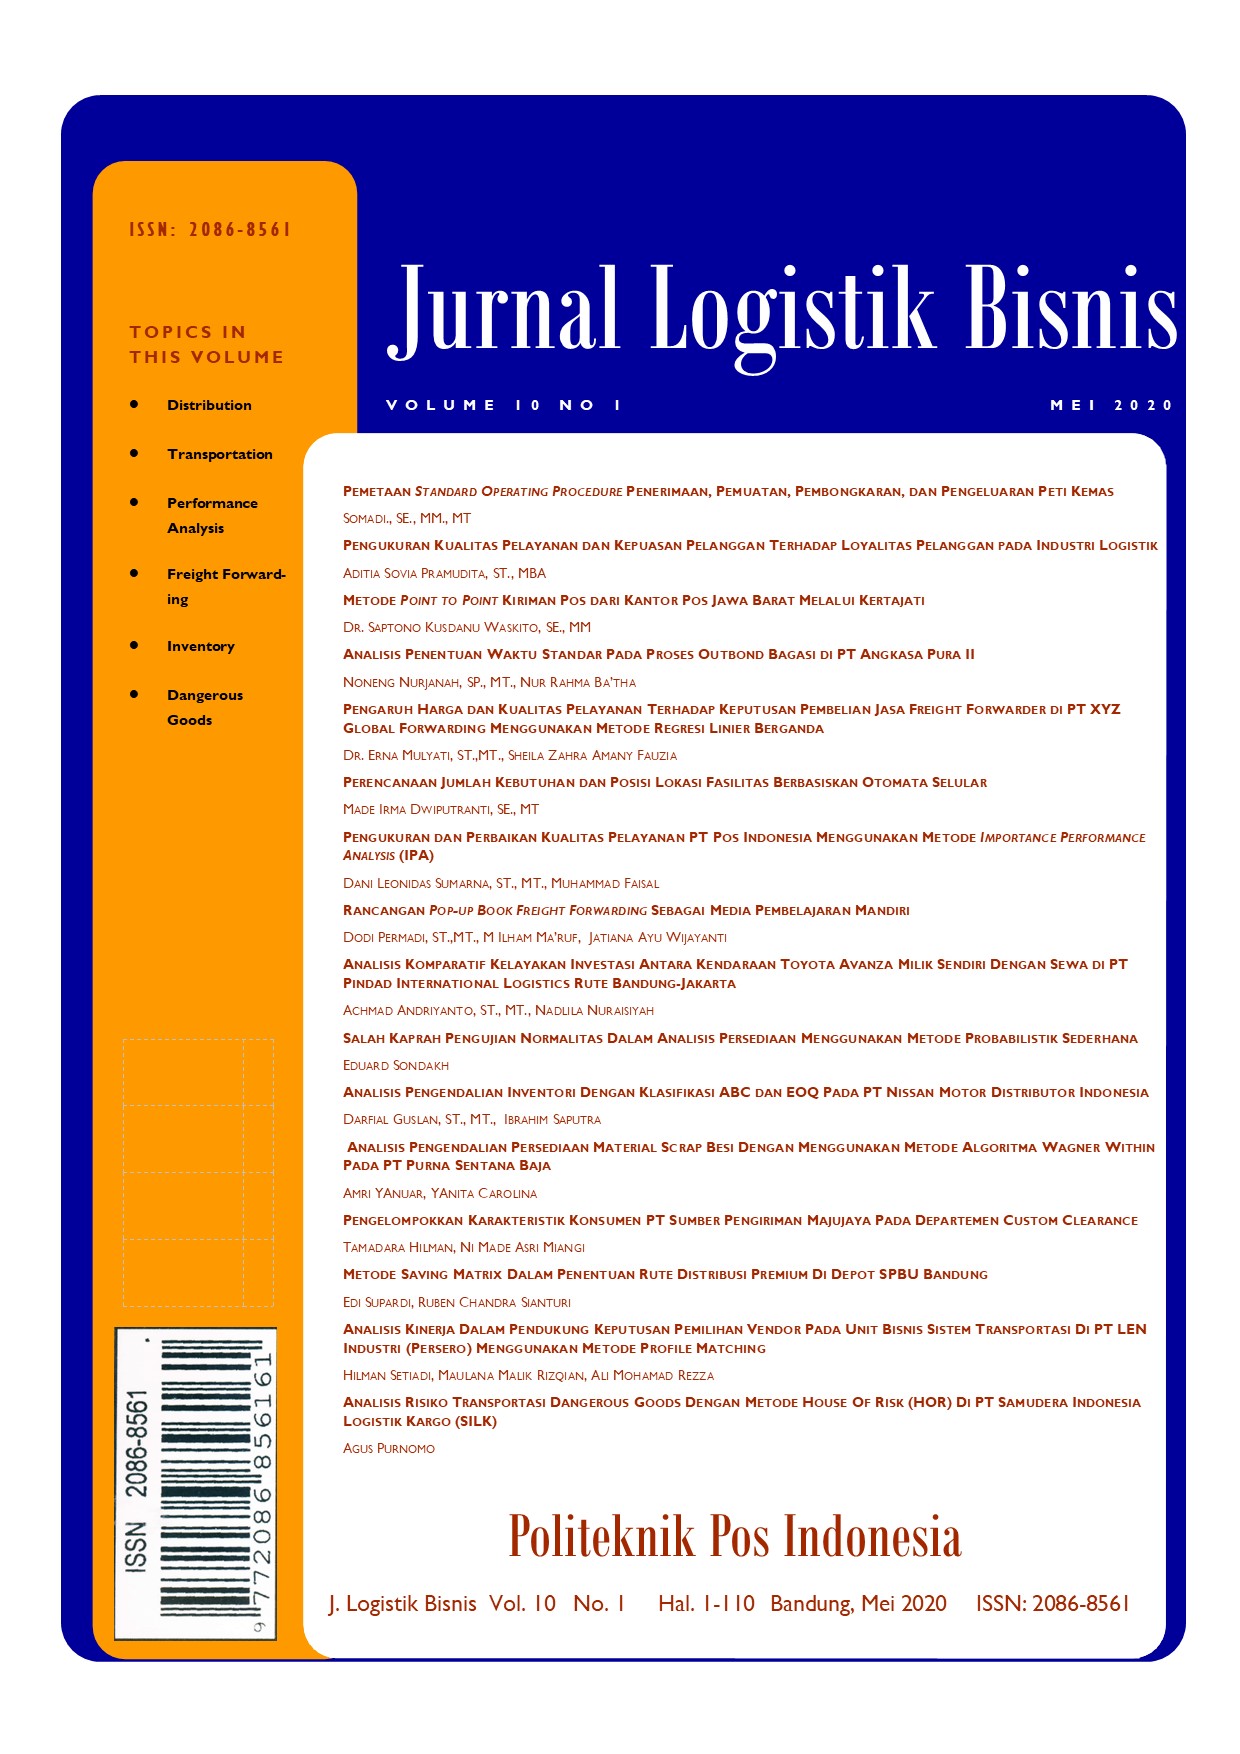 Jurnal Logistik Bisnis Volume 10 No.1 Mei 2020